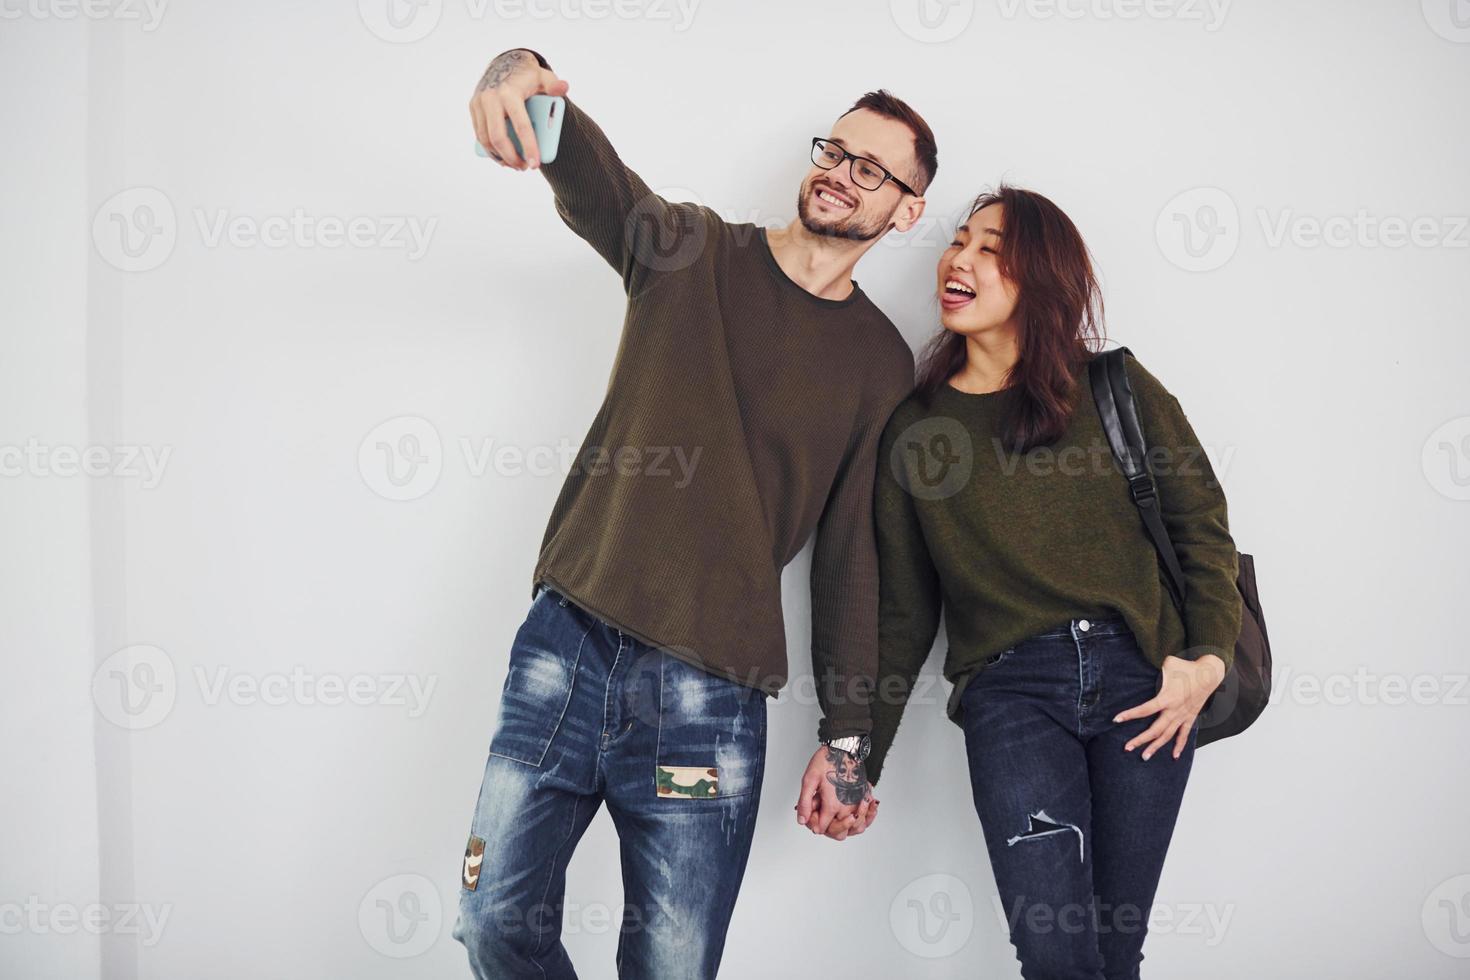 Fröhliches multiethnisches Paar in Freizeitkleidung, das im Studio vor weißem Hintergrund ein Selfie macht foto